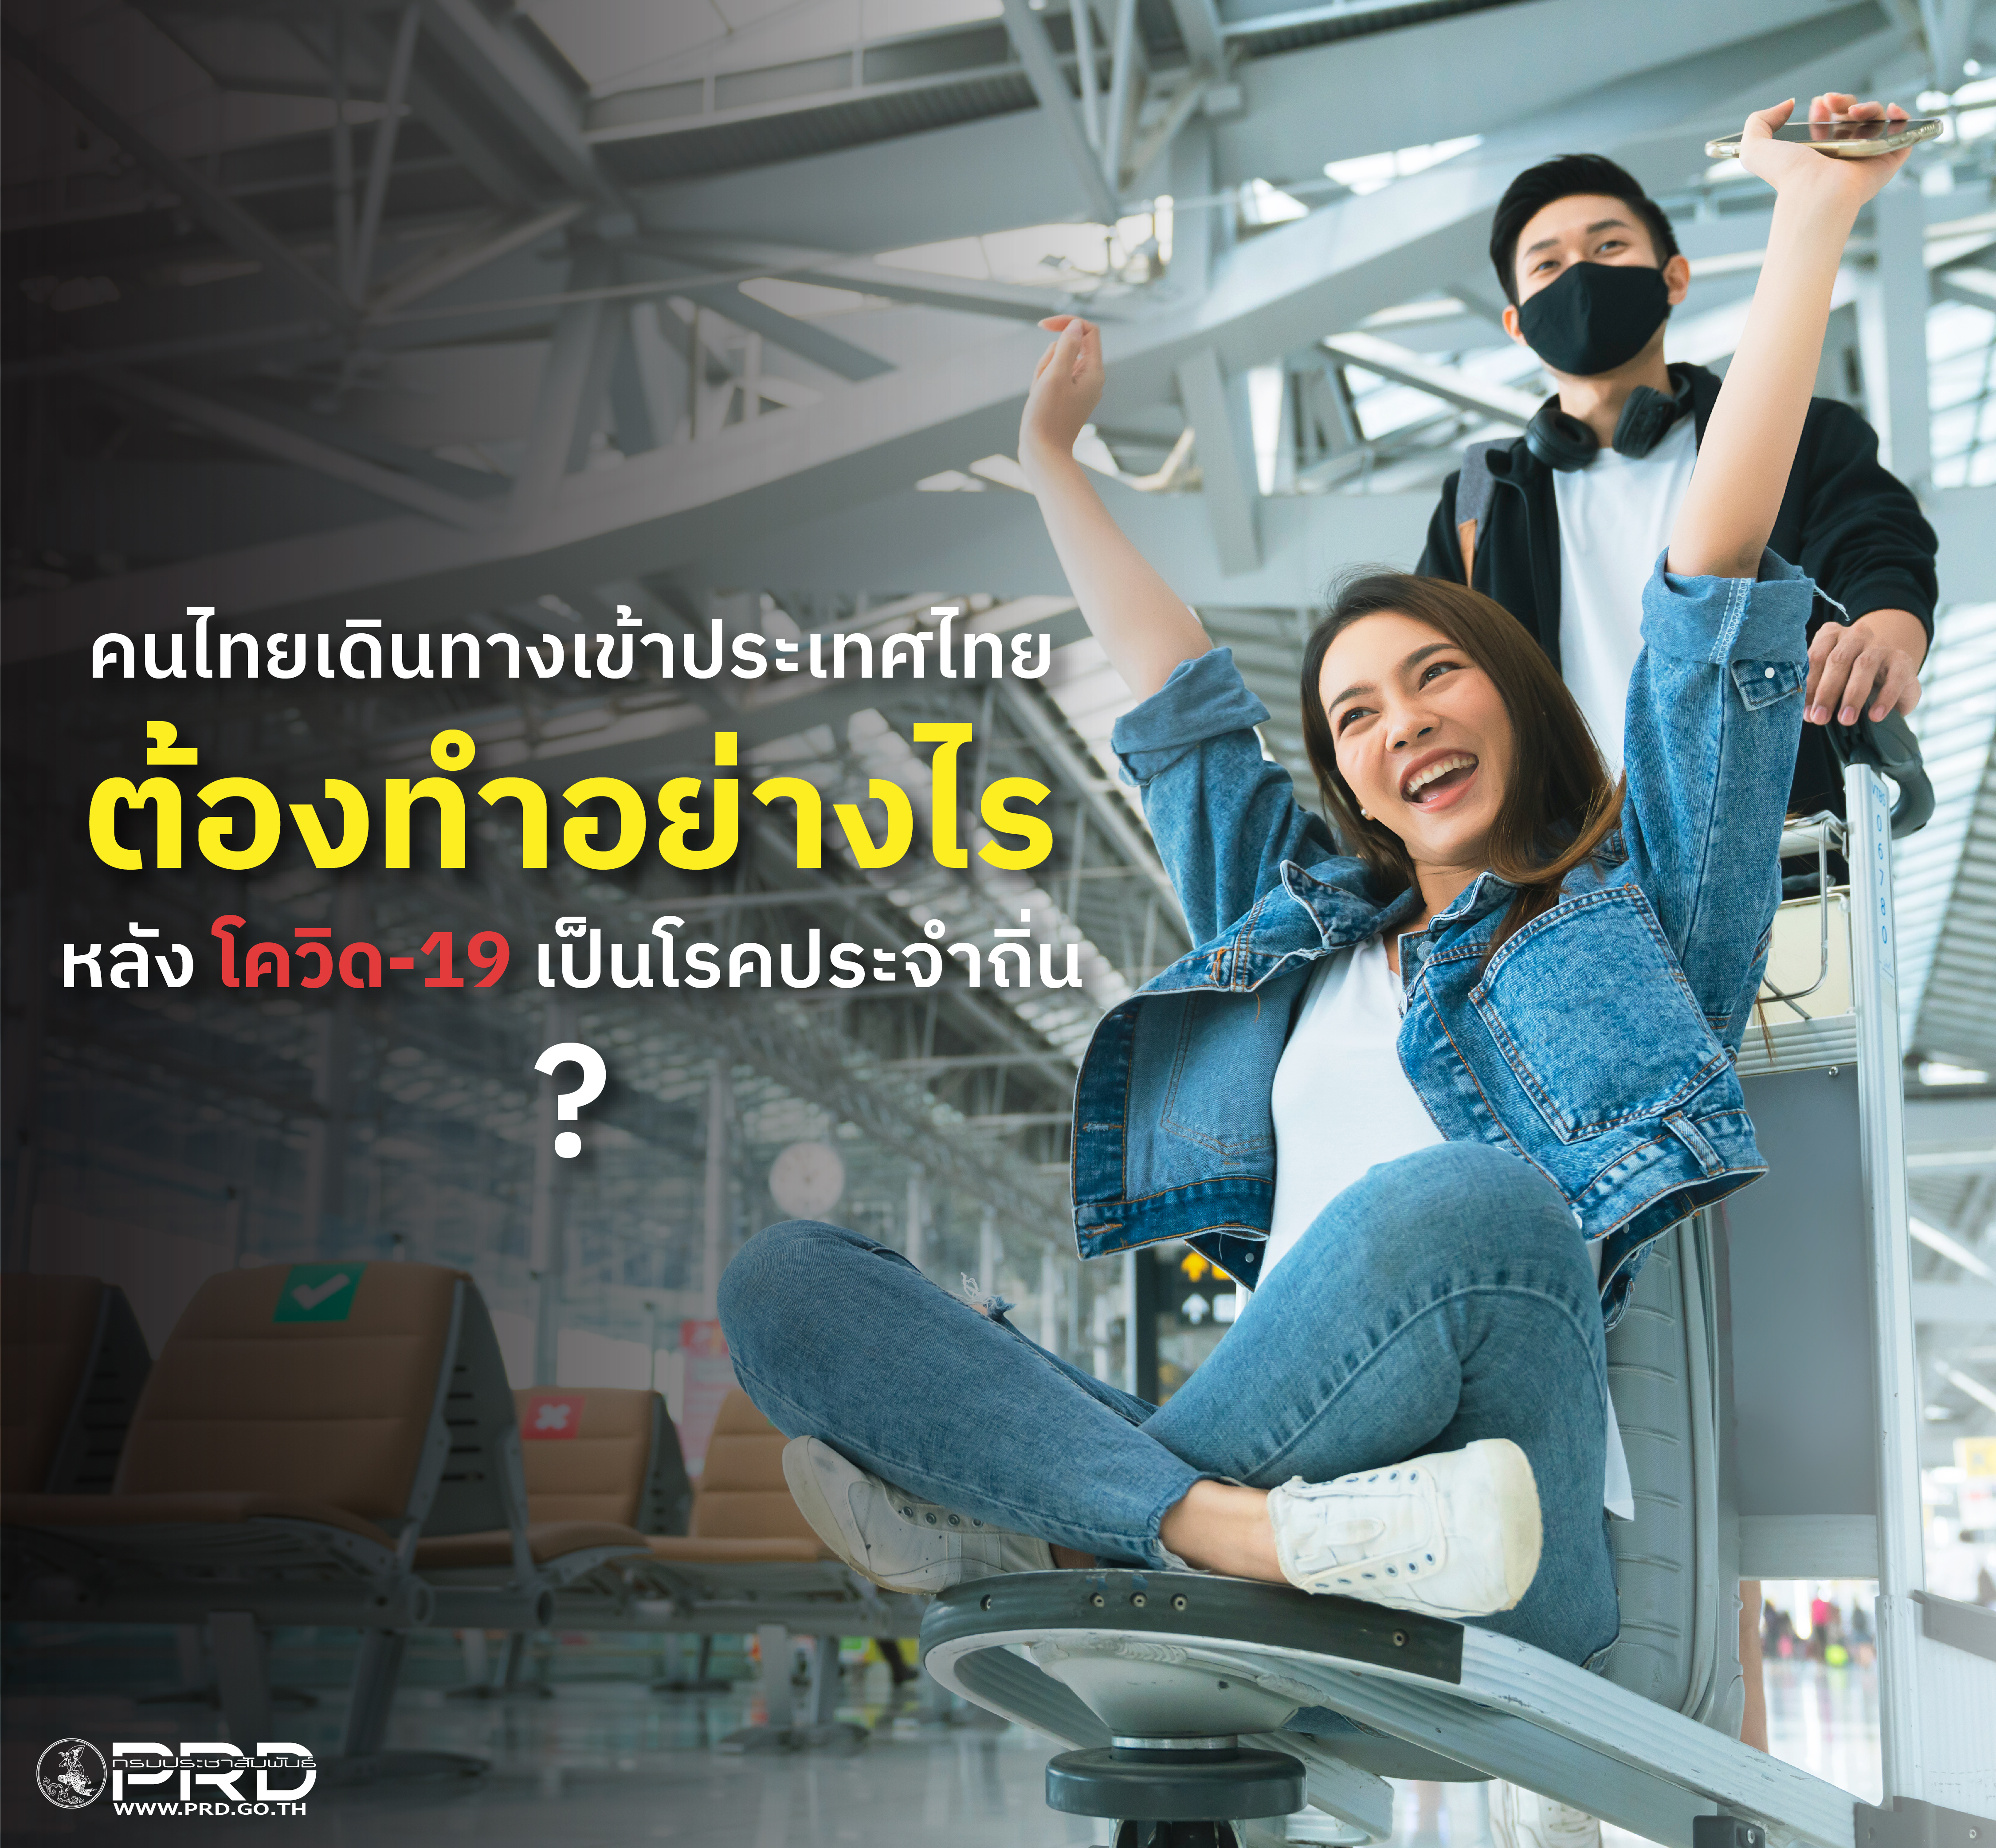 คนไทยเดินทางเข้าประเทศต้องทำอย่างไร หลัง โควิด-19 เป็นโรคประจำถิ่น ? 